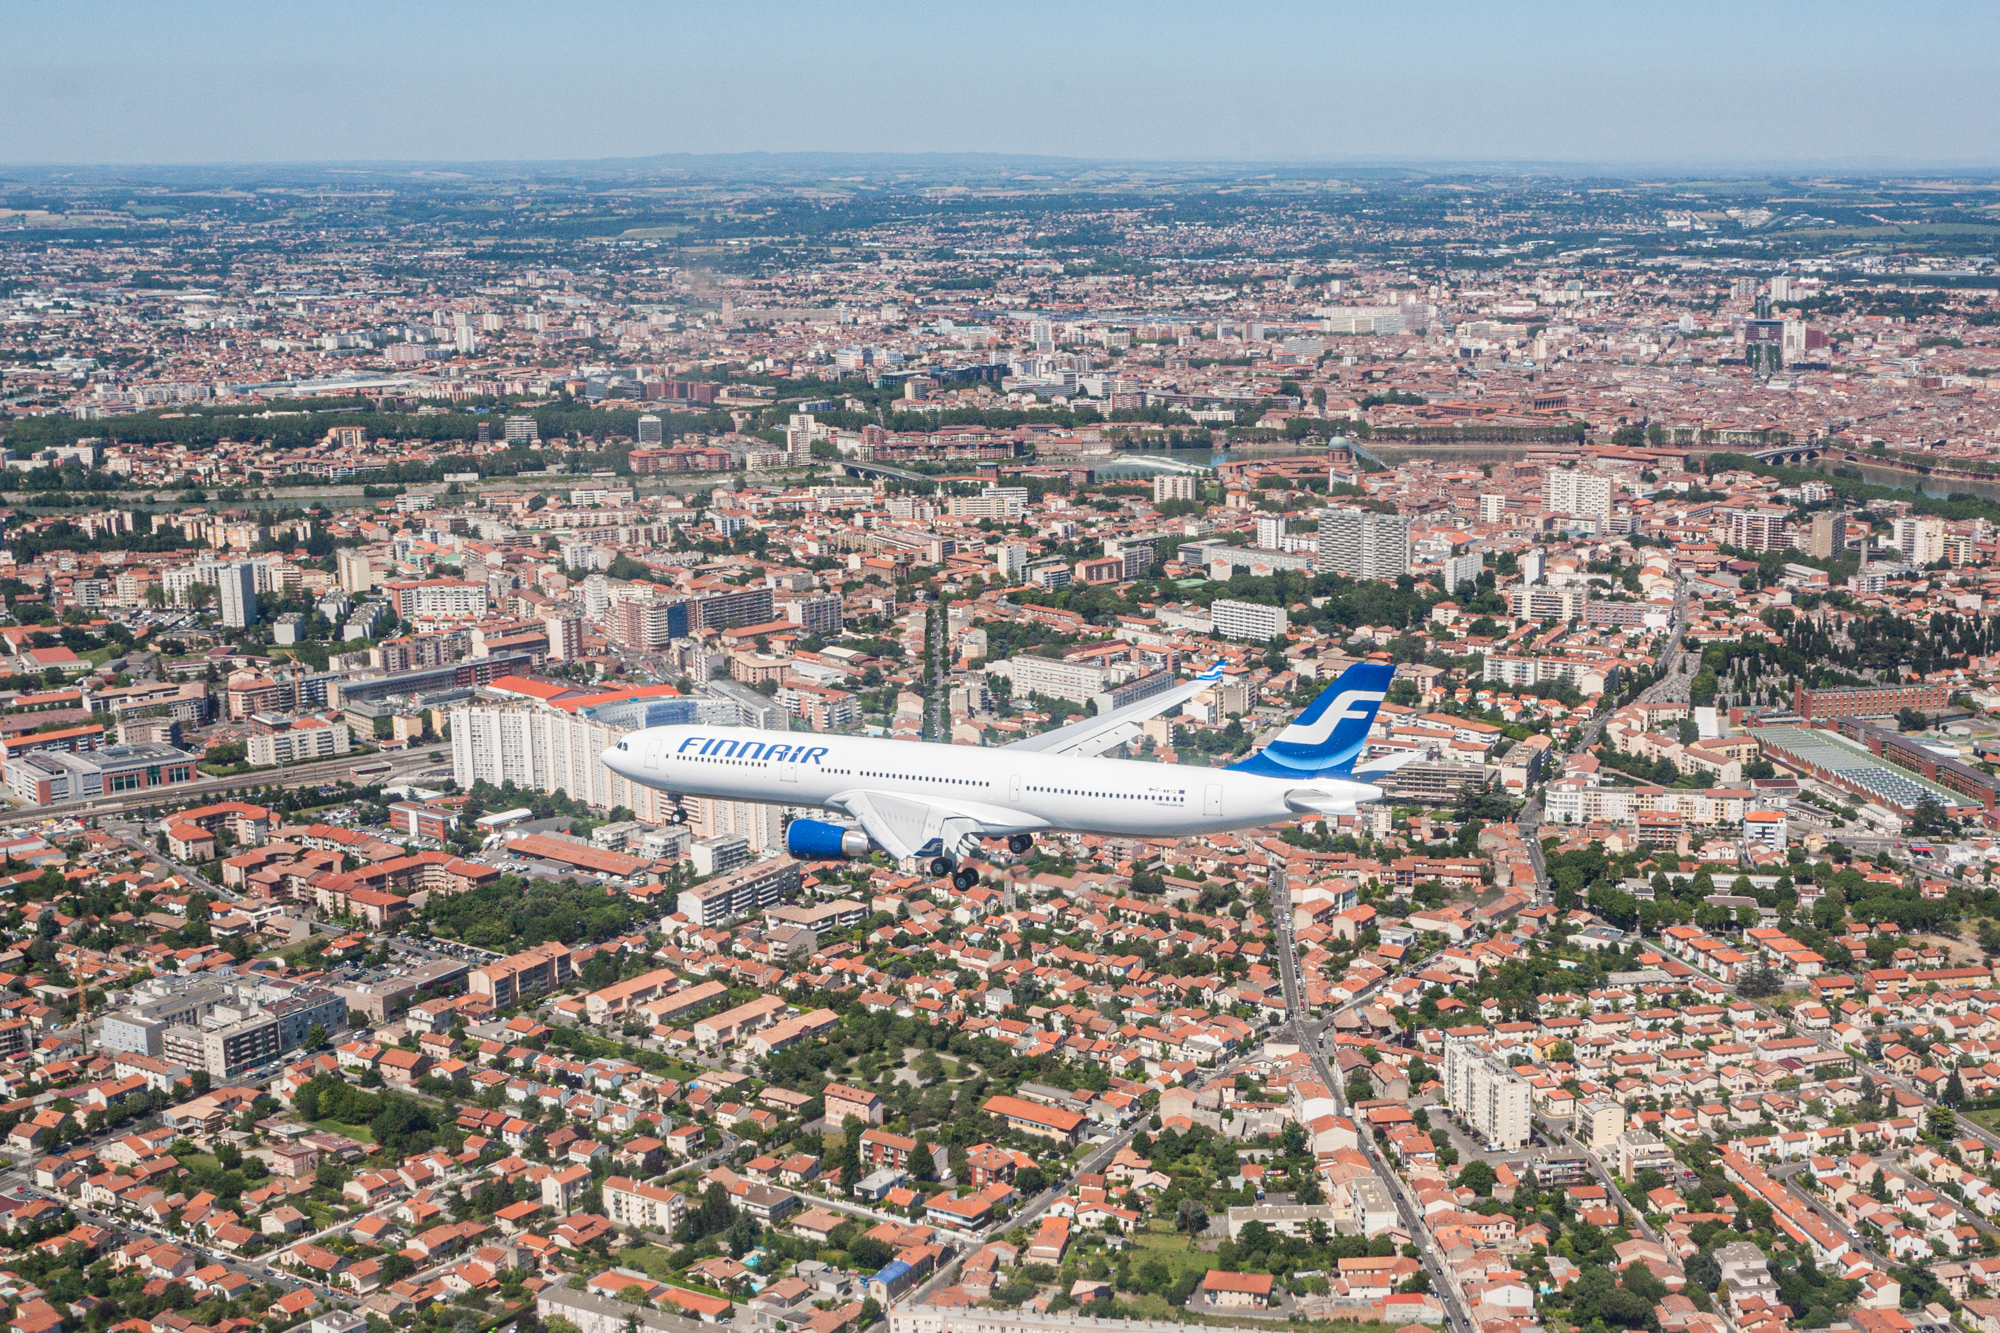 L'Airbus A330 au-dessus de la ville de Toulouse, photo aérienne